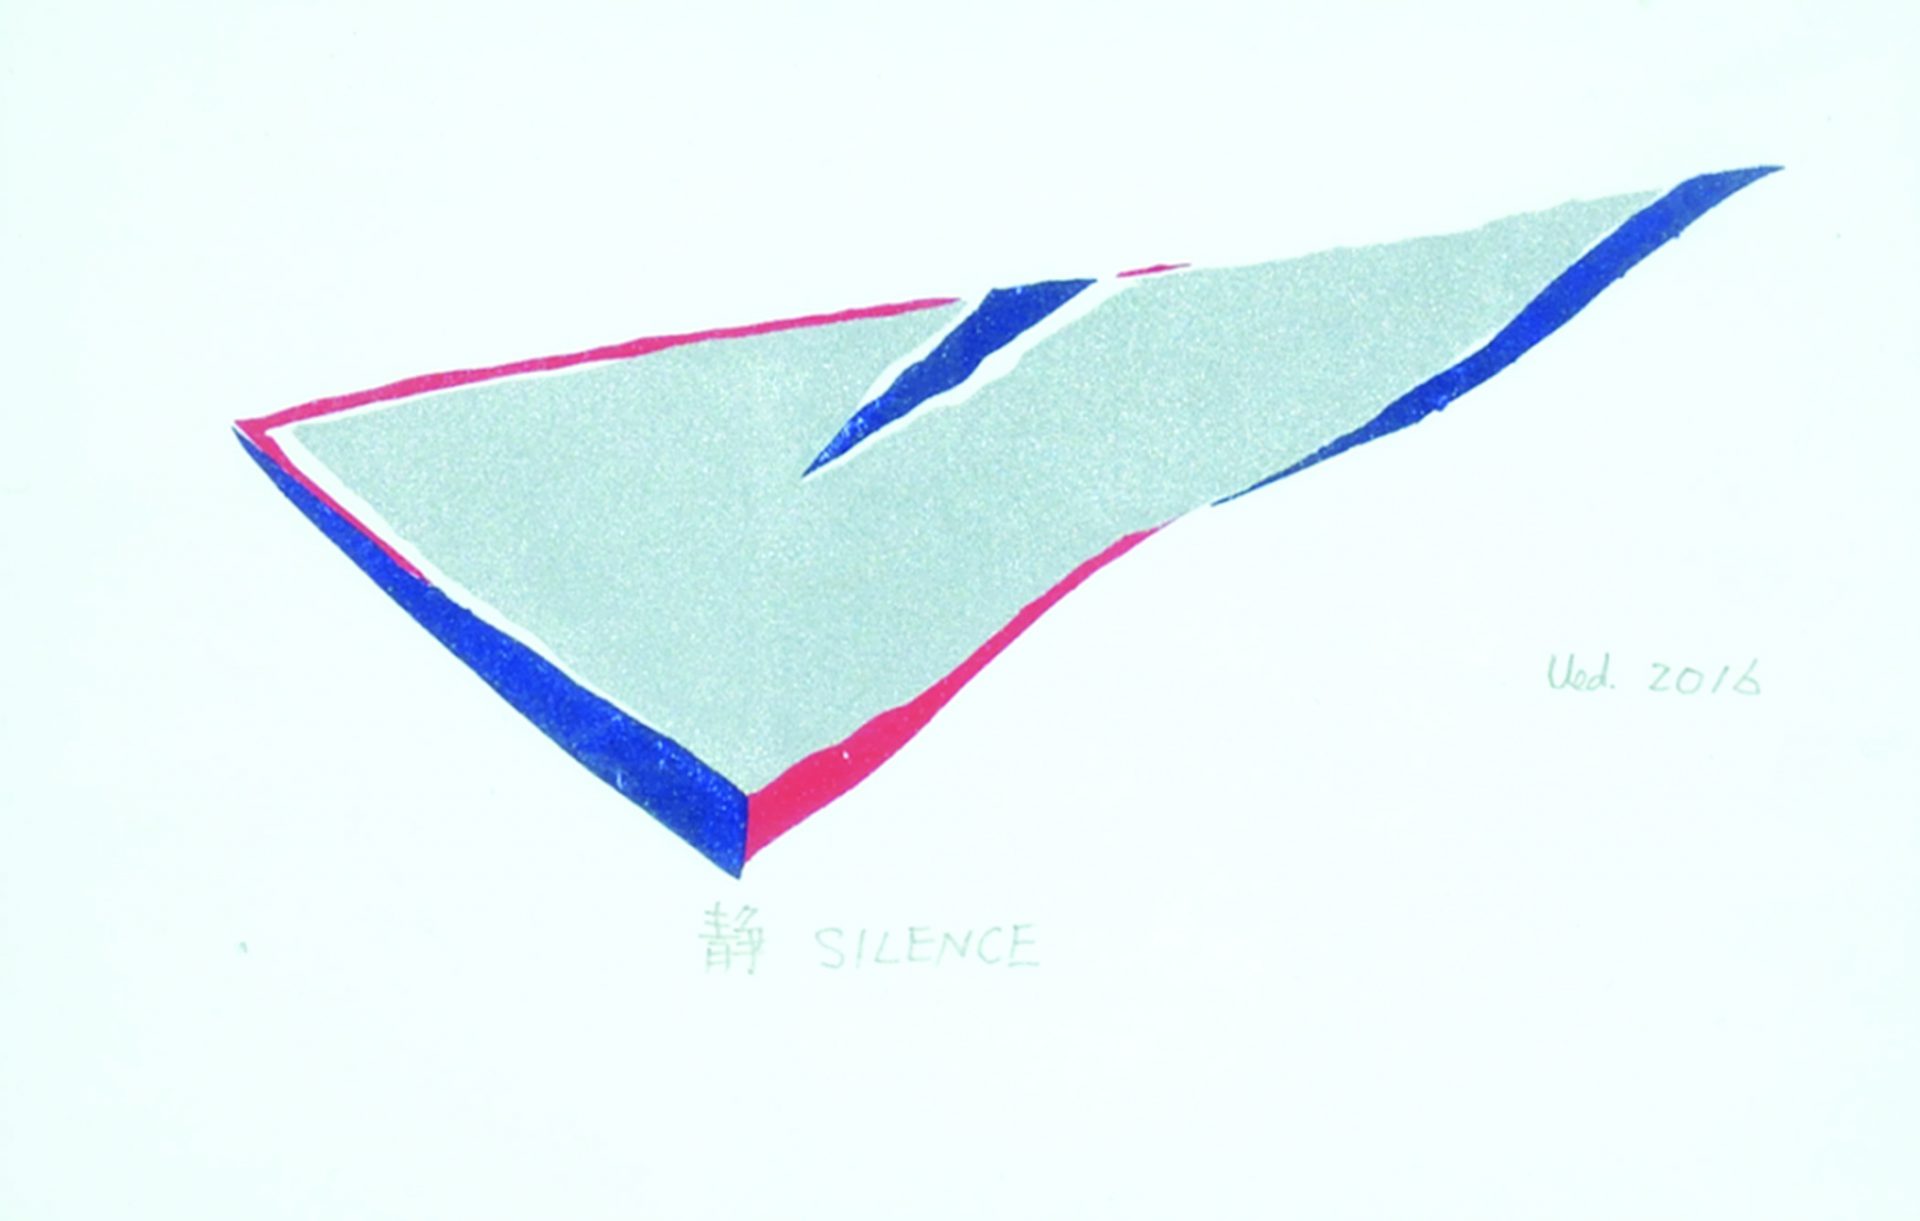 Minoru Ueda “Silence” 2016